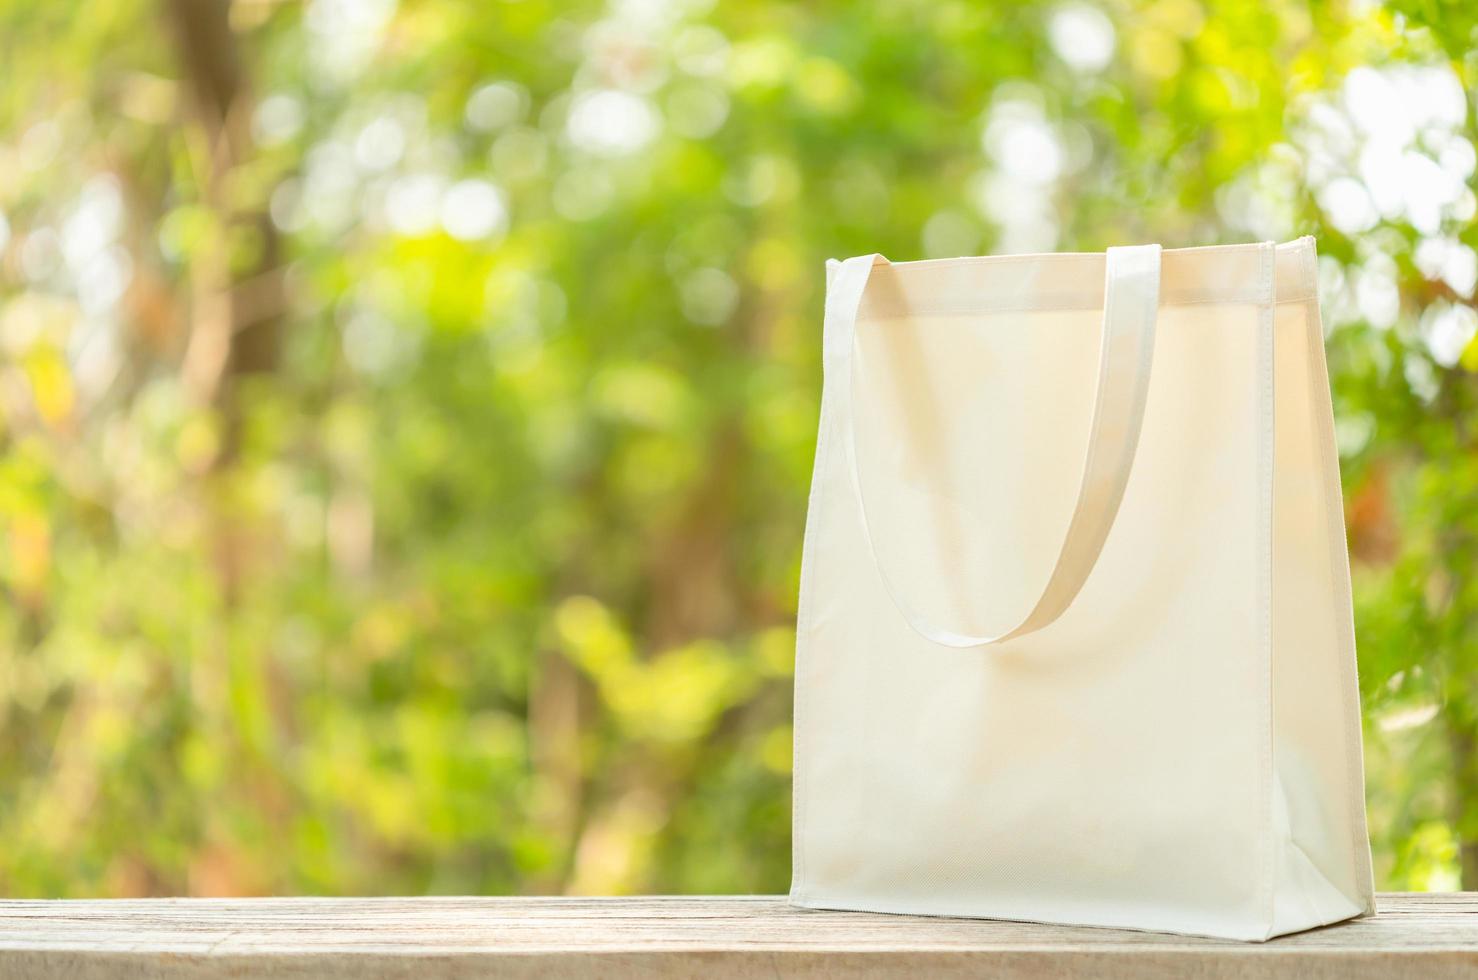 saco de algodão branco colocado na mesa de madeira com espaço para texto ou publicidade. saco de algodão pode usar para fazer compras para substituir o saco de plástico na natureza verde foto